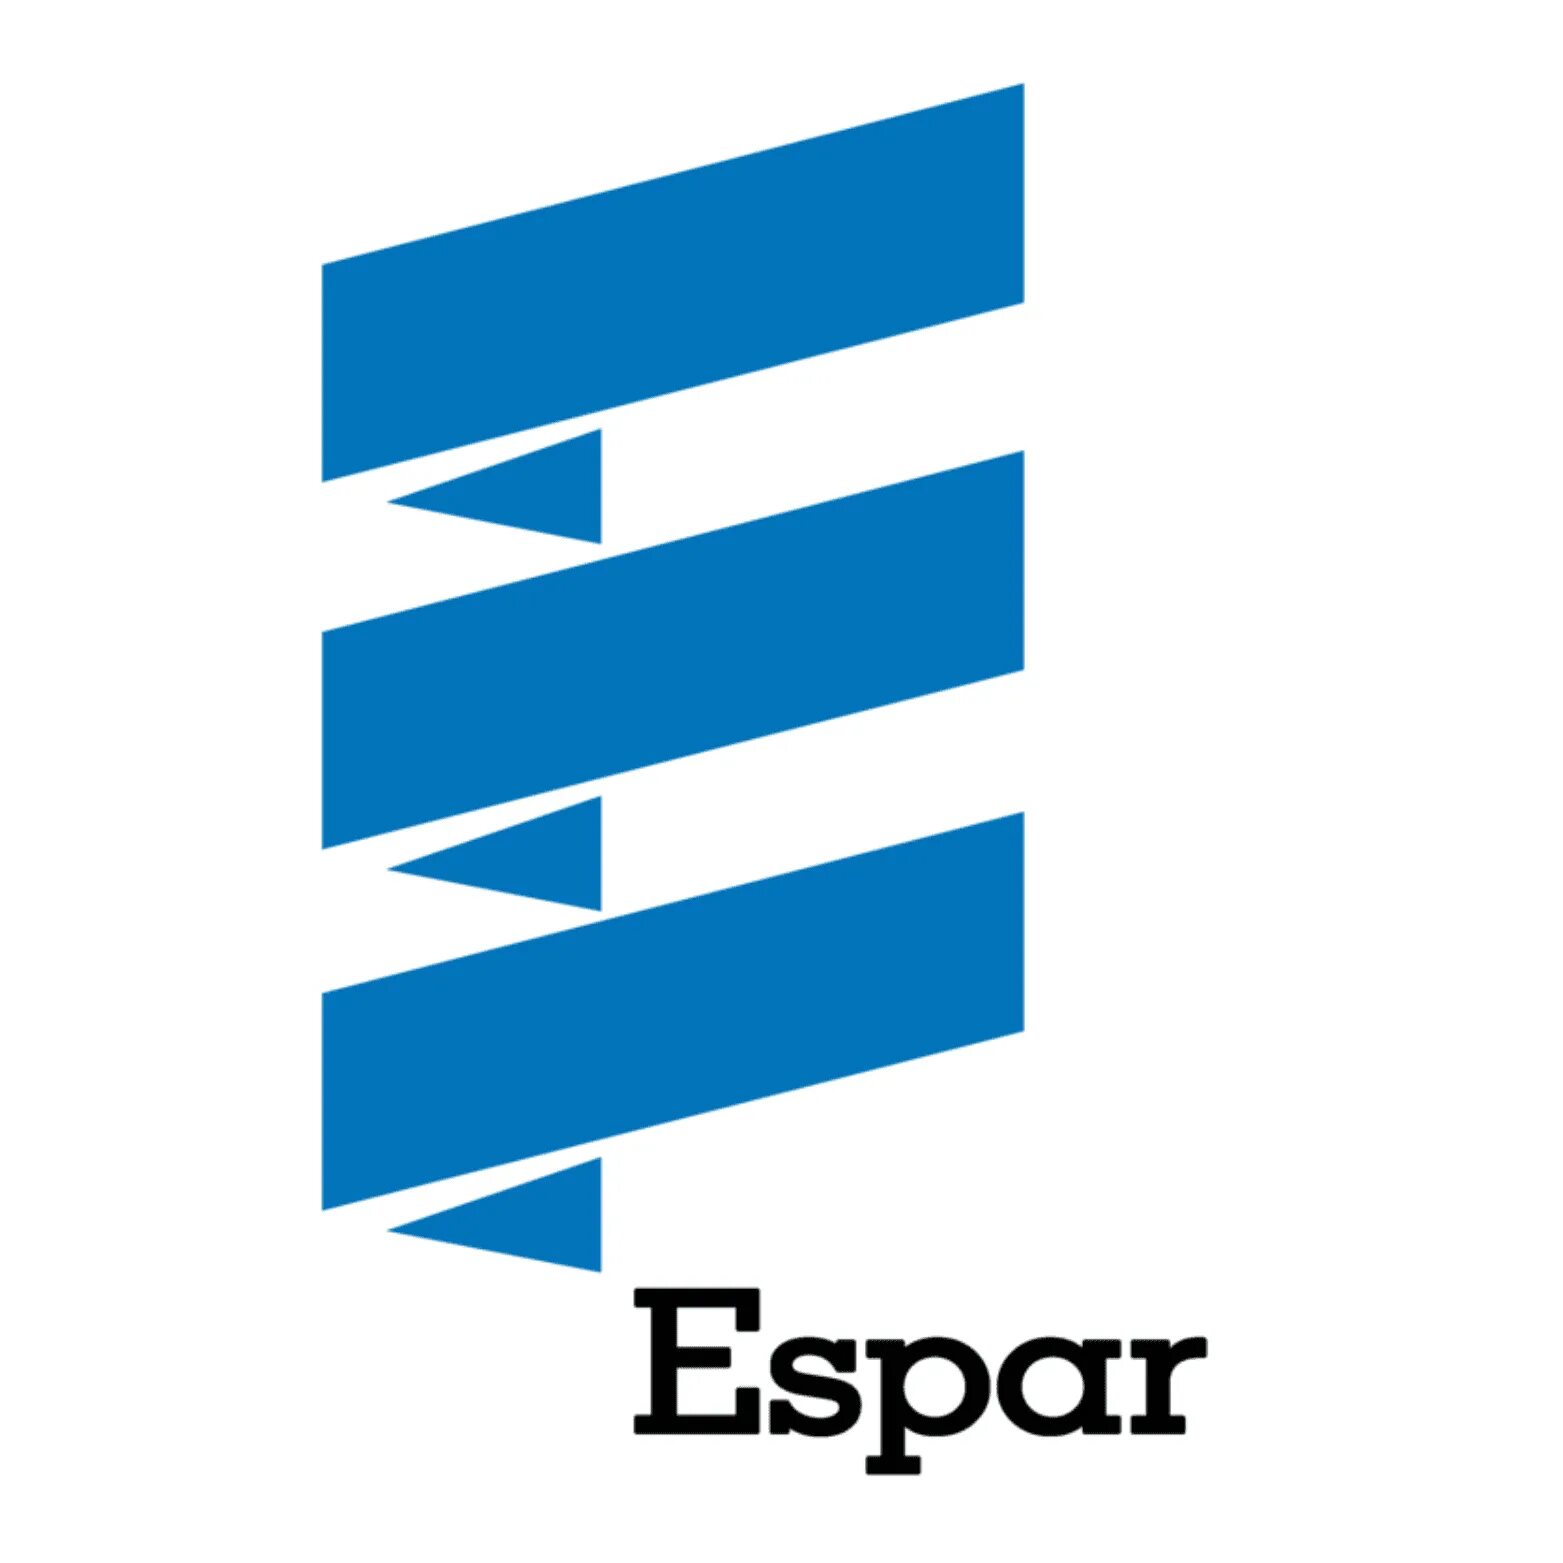 Systems rus. Eberspacher логотип. Эбершпехер логотип. Espar логотип. Вебасто лоотипна прозрачном фоне.